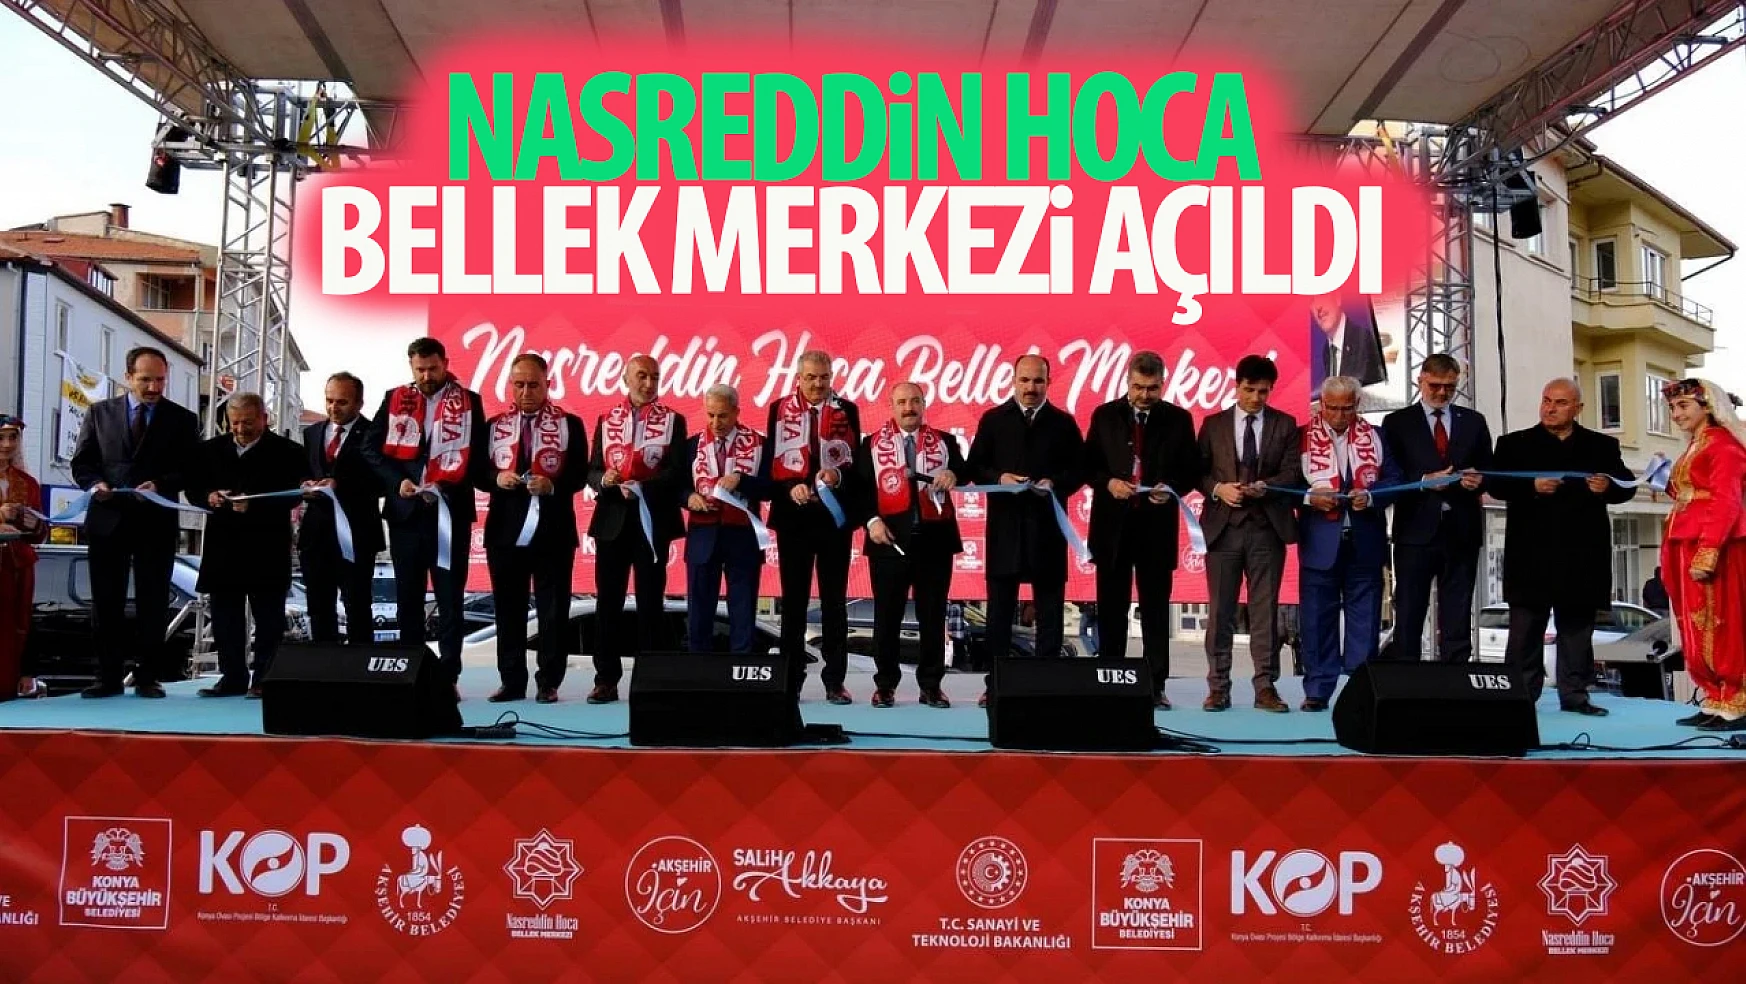 Konya'da Nasreddin Hoca Bellek Merkezi açıldı!